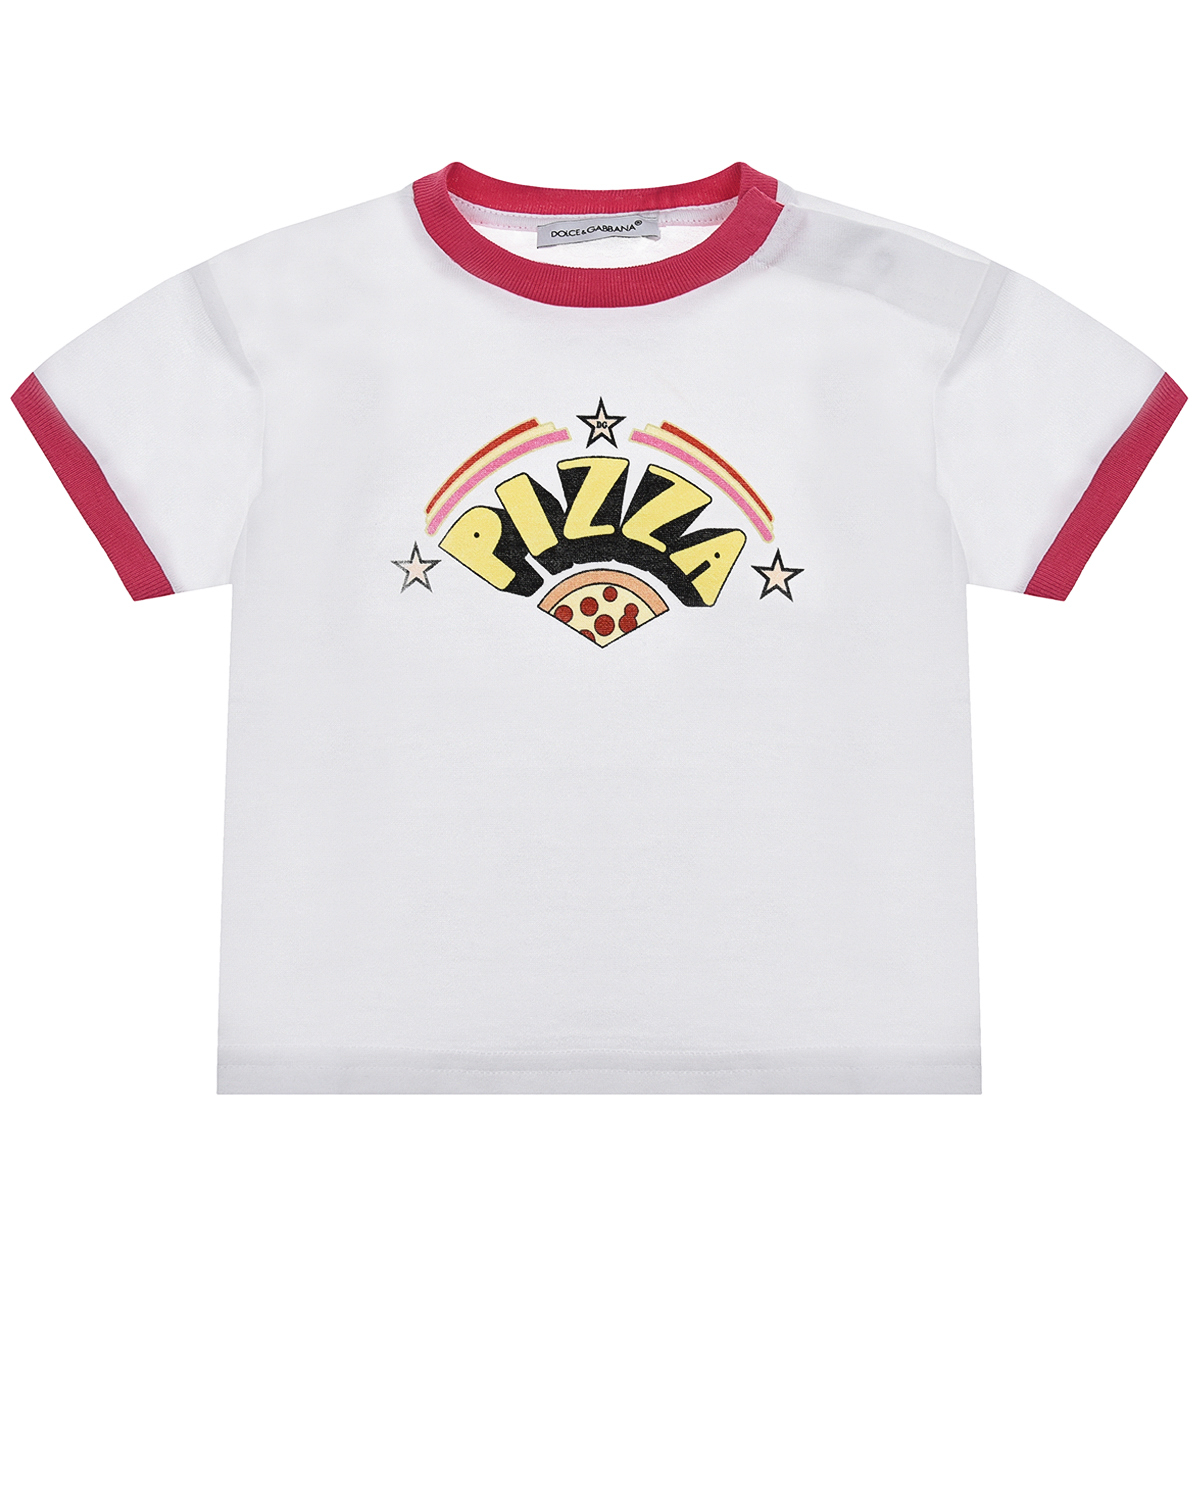 Купить Белая футболка с принтом пицца Dolce&Gabbana детская, Белый, 100%хлопок